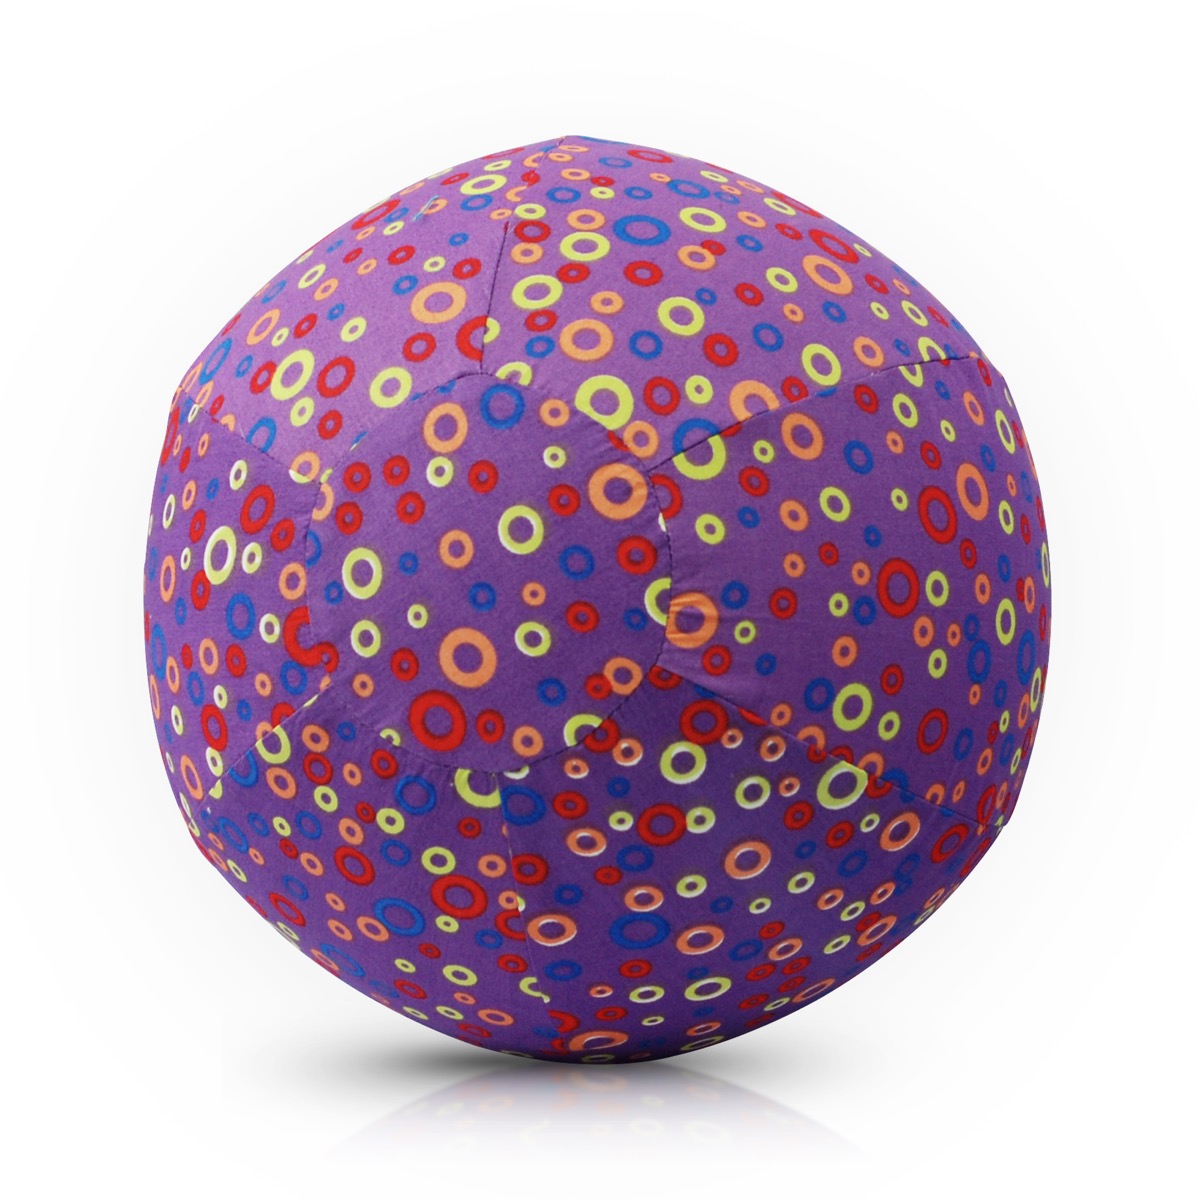 Воздушный мяч с набором шариков и чехлом – Кружочки/Circles, фиолетовый  